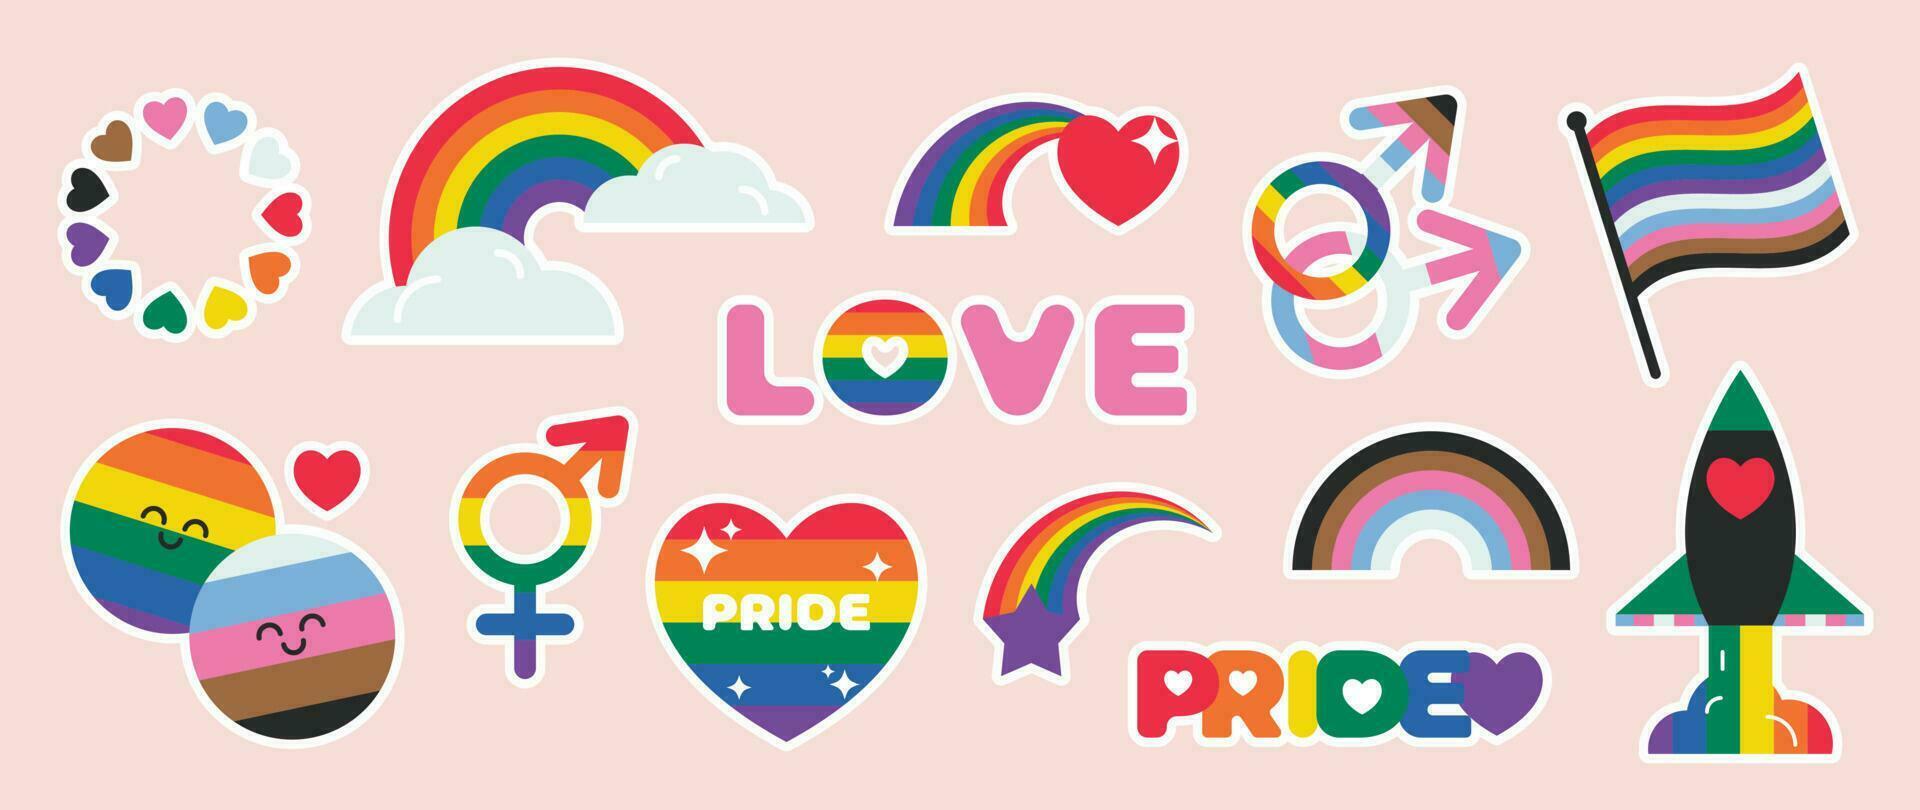 Lycklig stolthet lgbtq element uppsättning. lgbtq gemenskap symboler med regnbåge flagga, raket, hjärta. element illustrerade för stolthet månad, bisexuell, transpersoner, kön jämlikhet, klistermärke, rättigheter begrepp. vektor